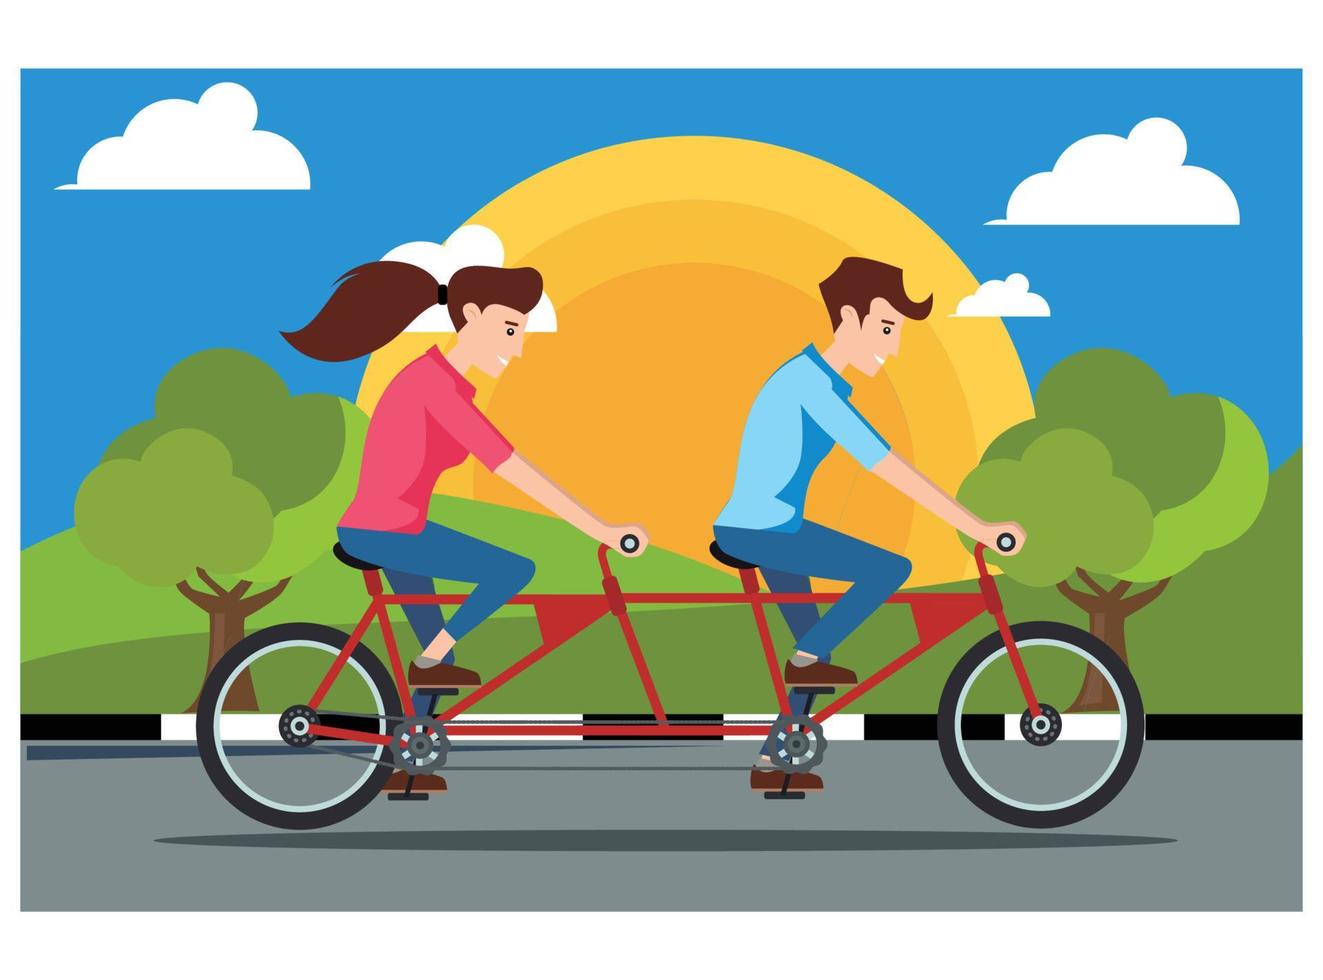 ilustração jovens fazendo atividade física ao ar livre no parque de bicicleta. ilustração adequada para diagramas, infográficos e outros ativos gráficos vetor